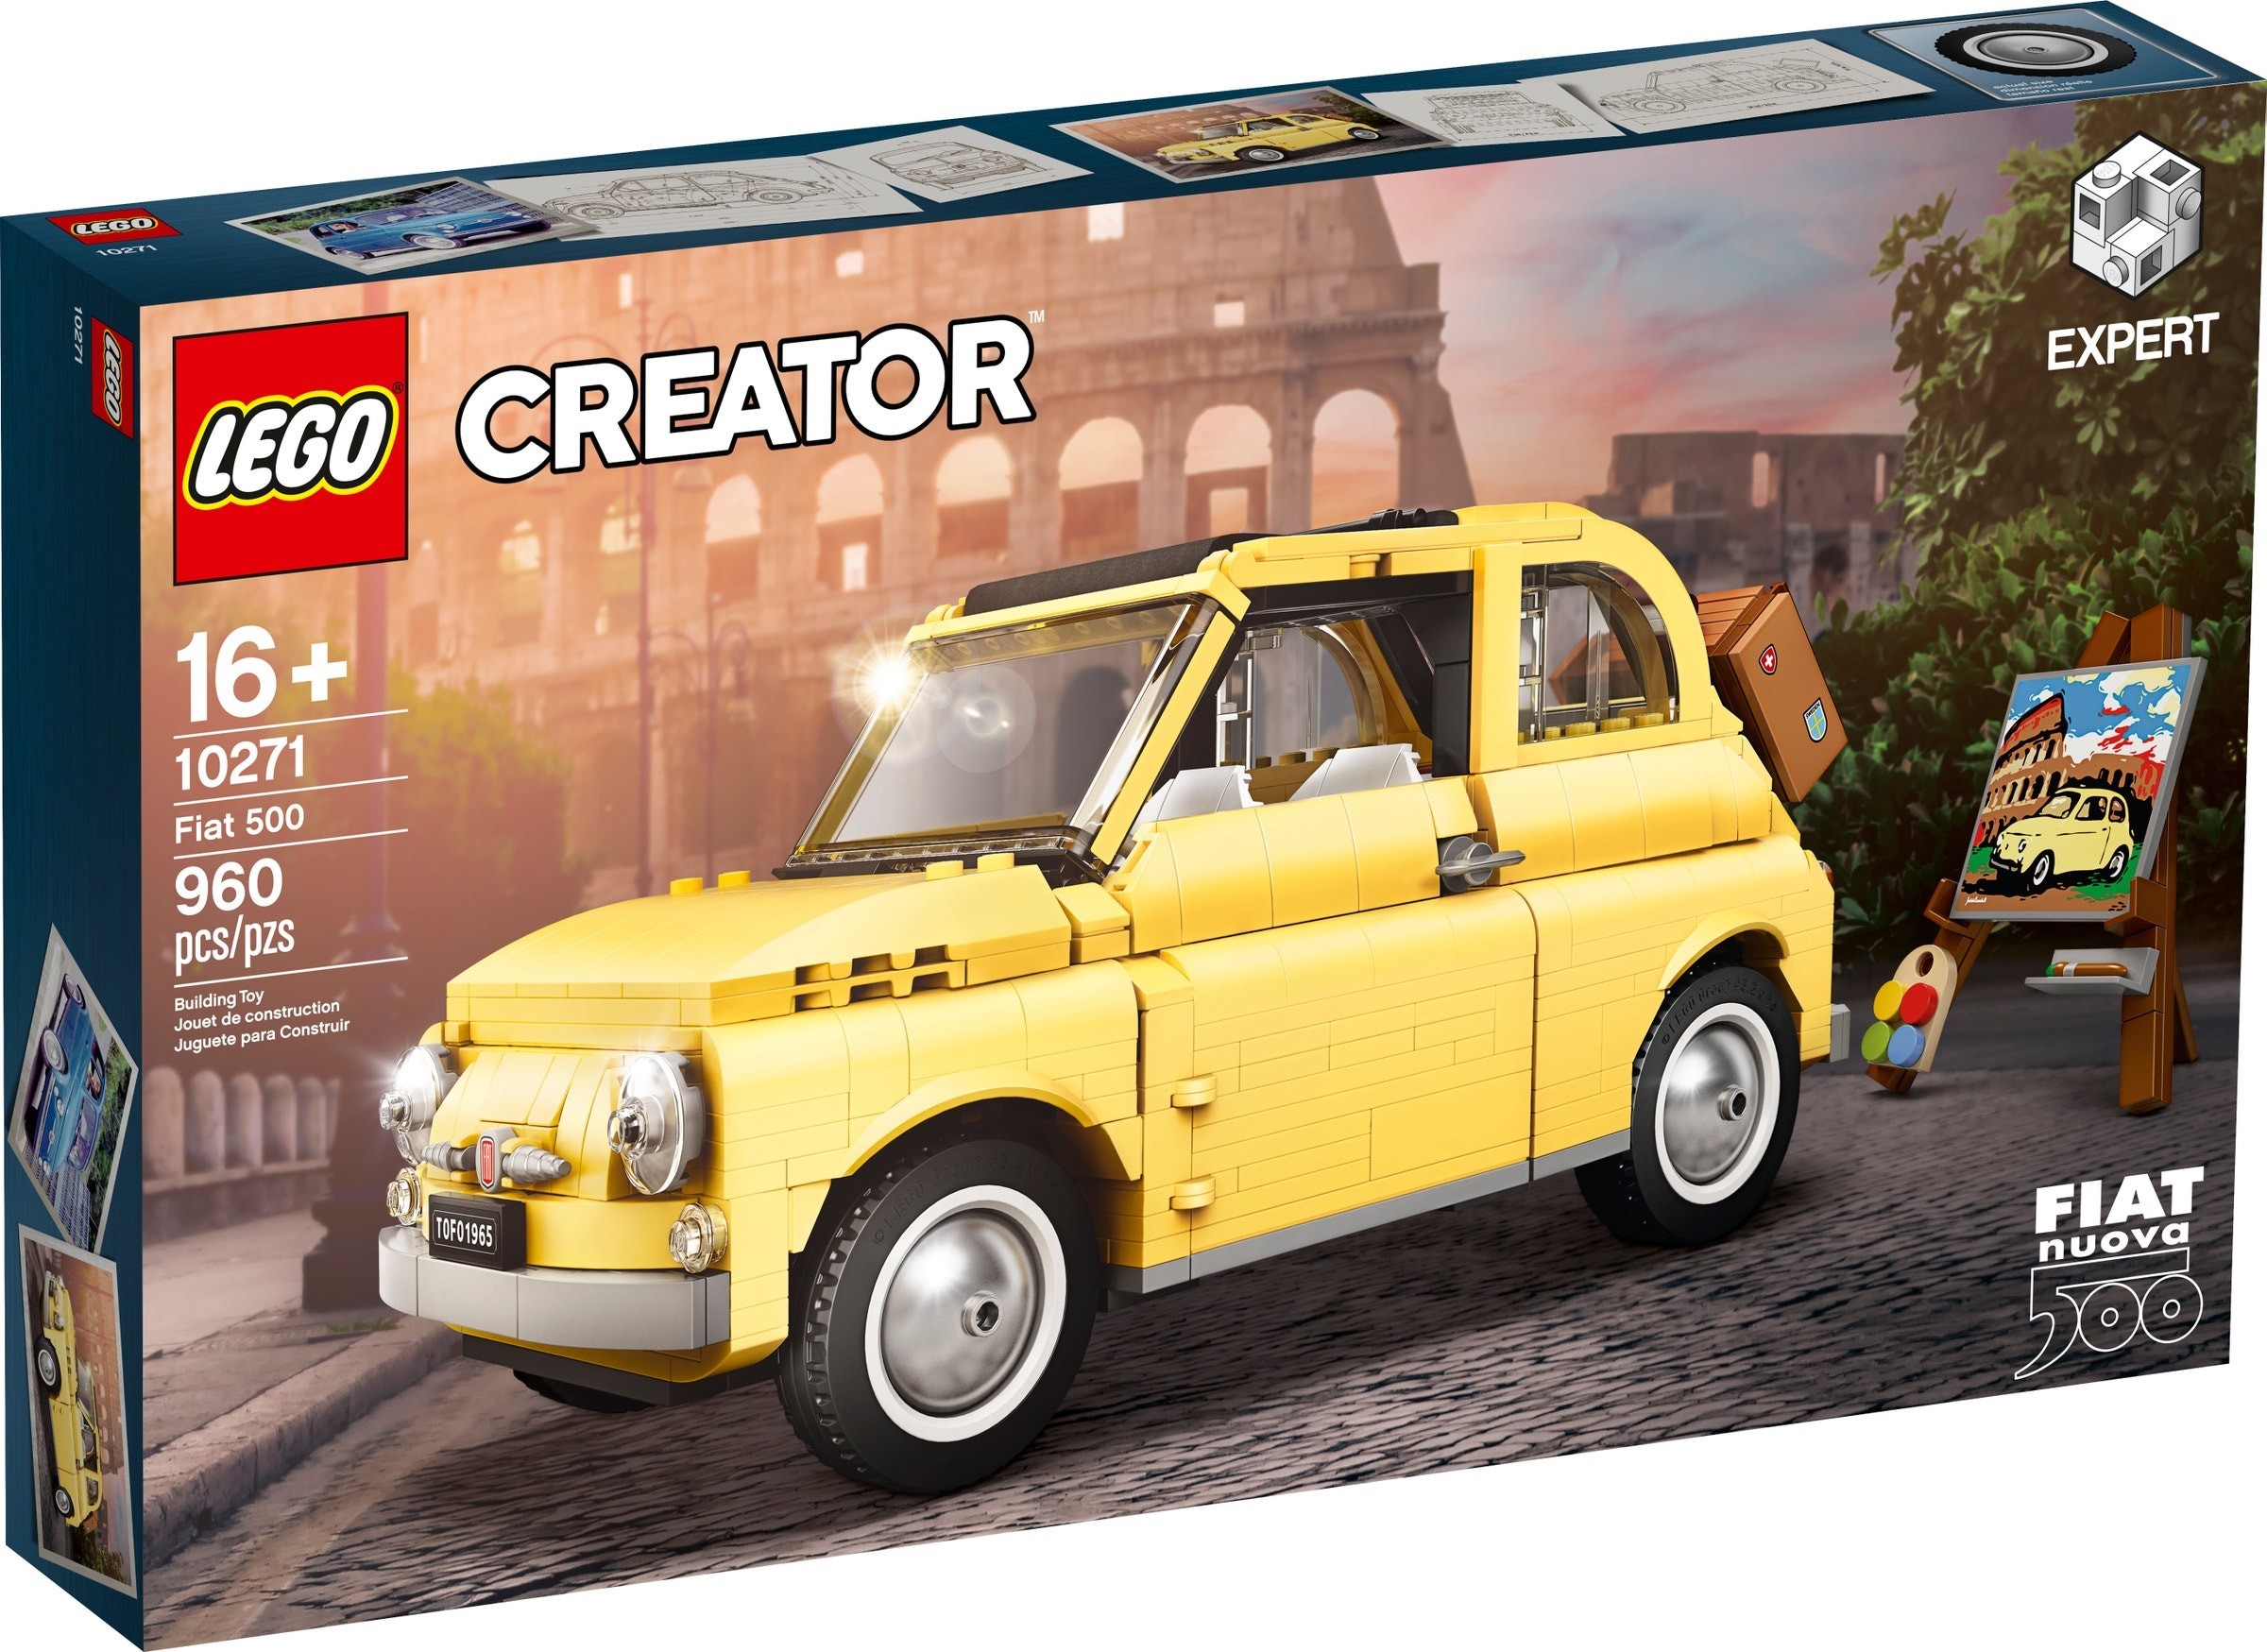 10271 Fiat 500 | Brickipedia | Fandom